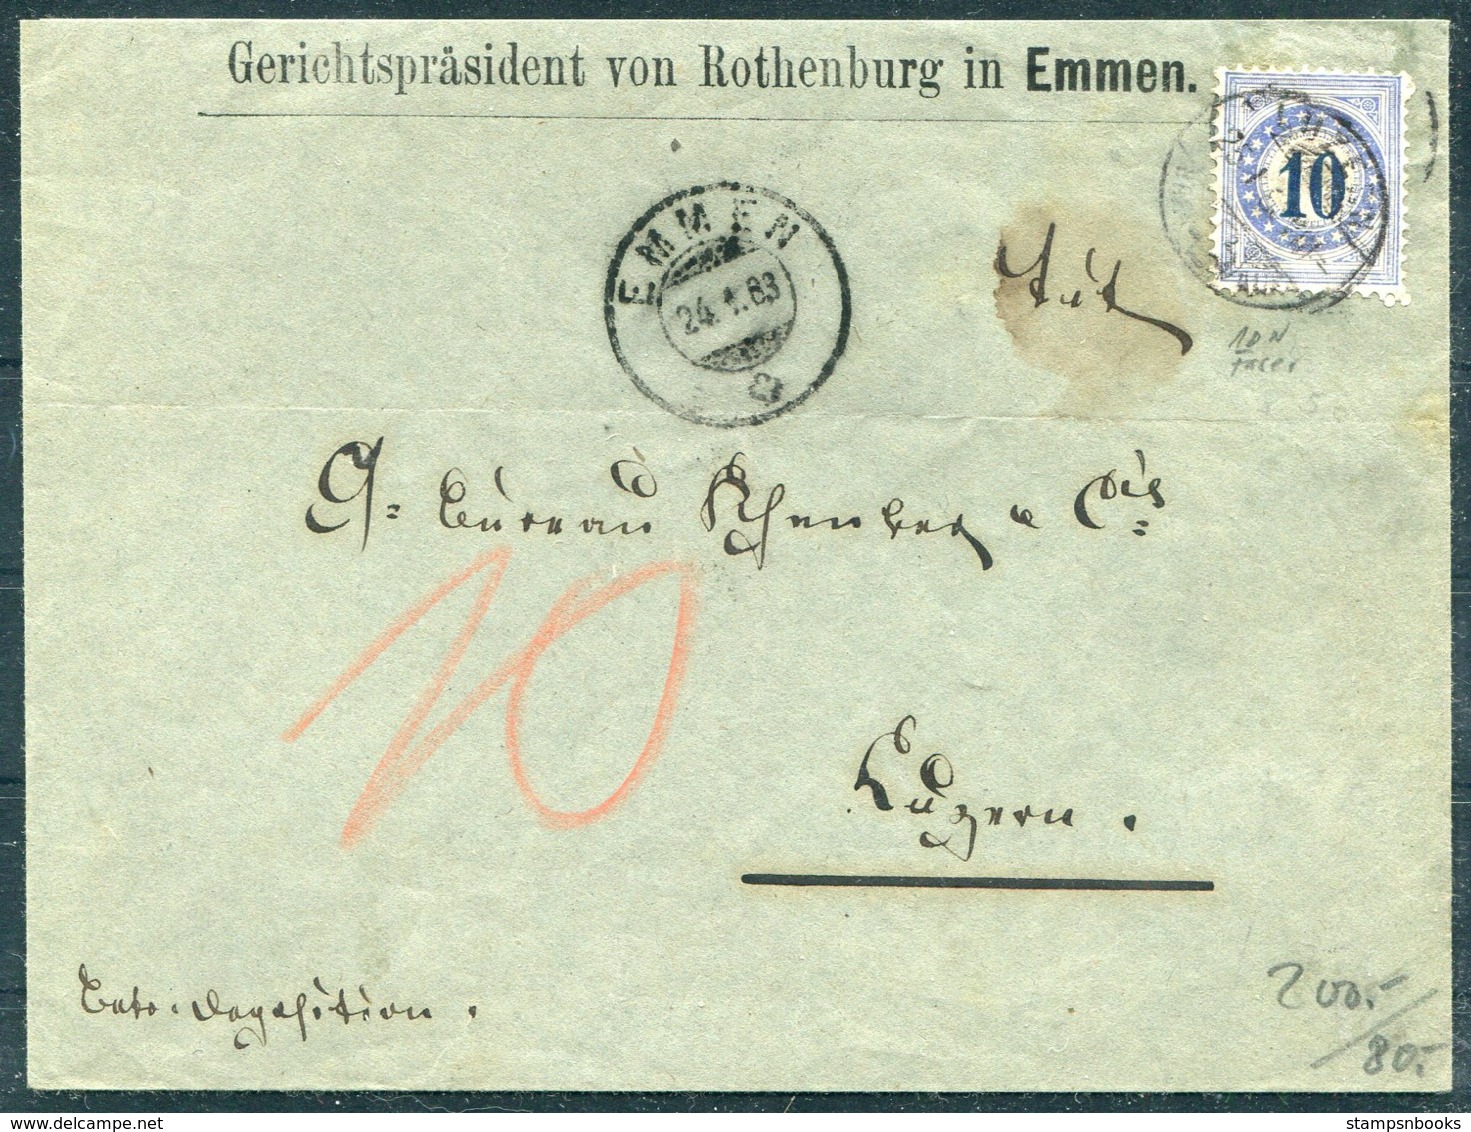 1883 Switzerland Gerichtsprasident Von Rothenburg In Emmen 10c Fraserpapier (N10) Portomarken Cover - Luzern. - Covers & Documents